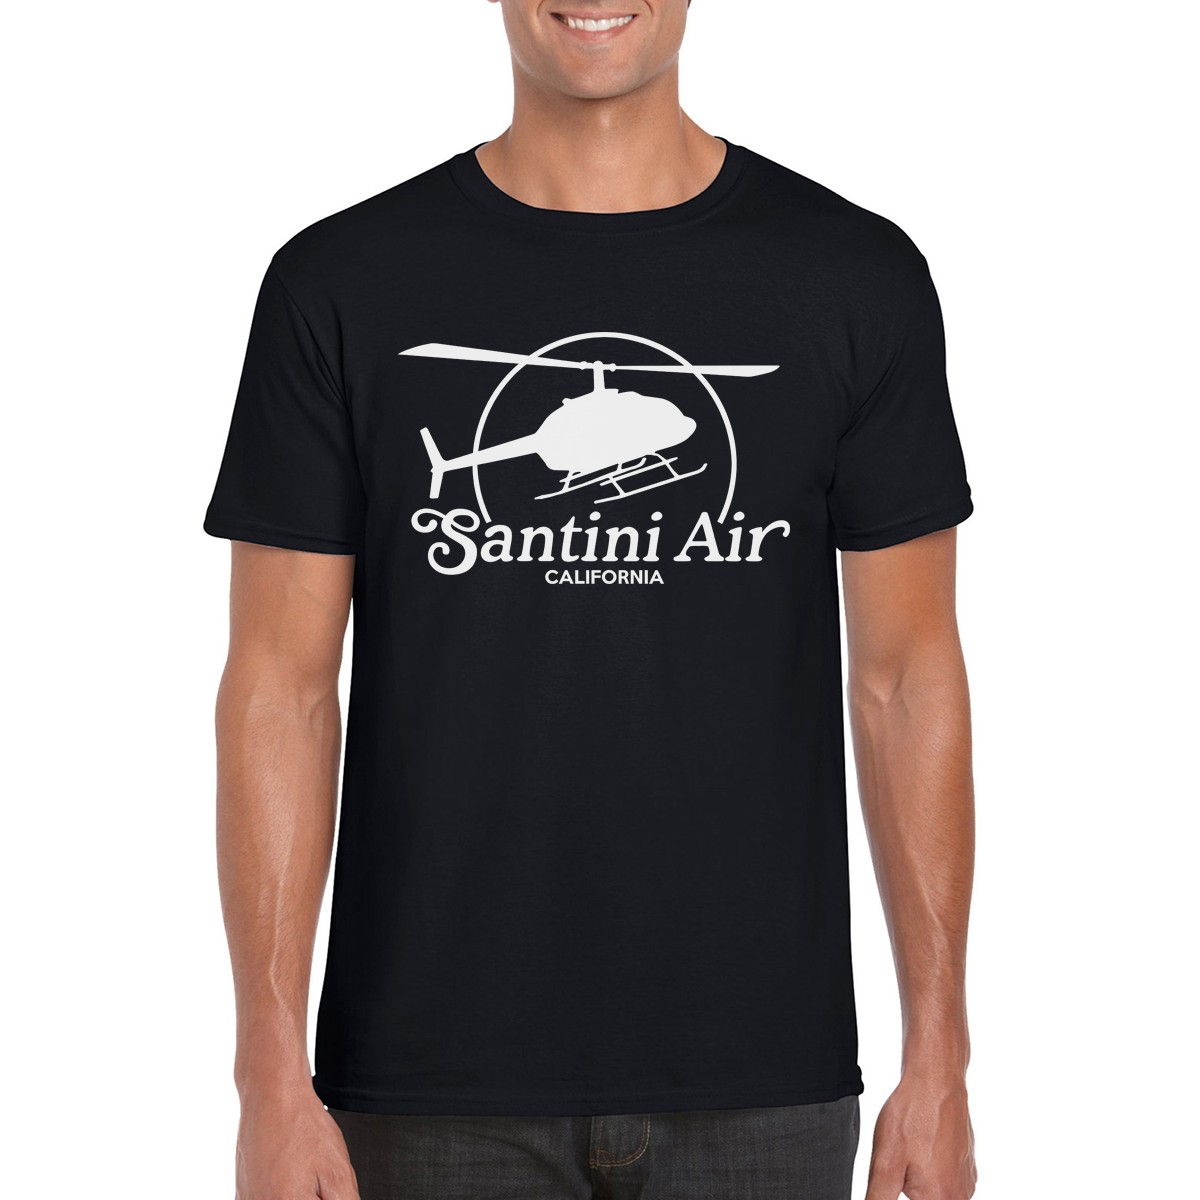 SANTINI AIR T-Shirt